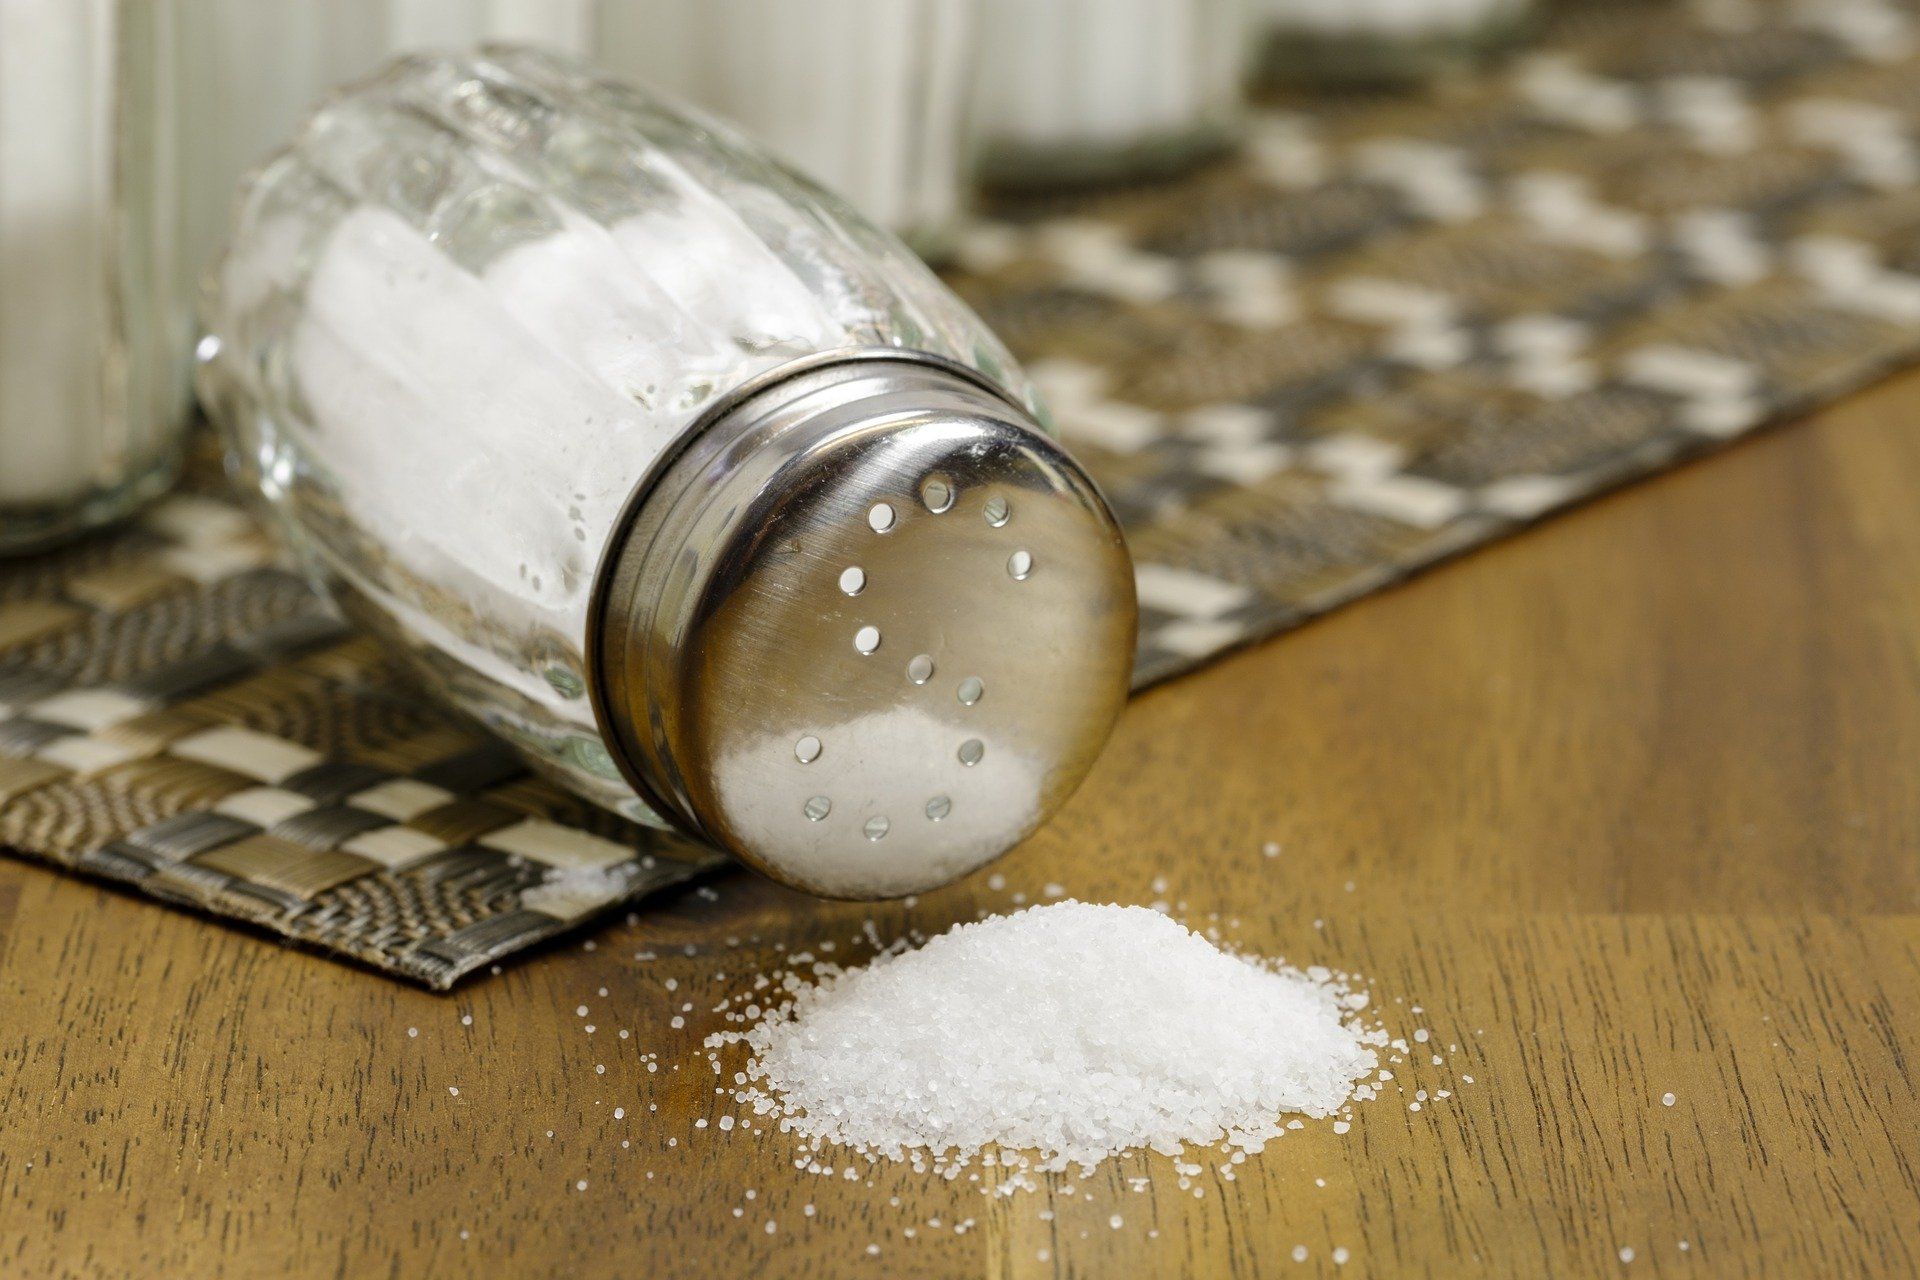 overturned salt shaker